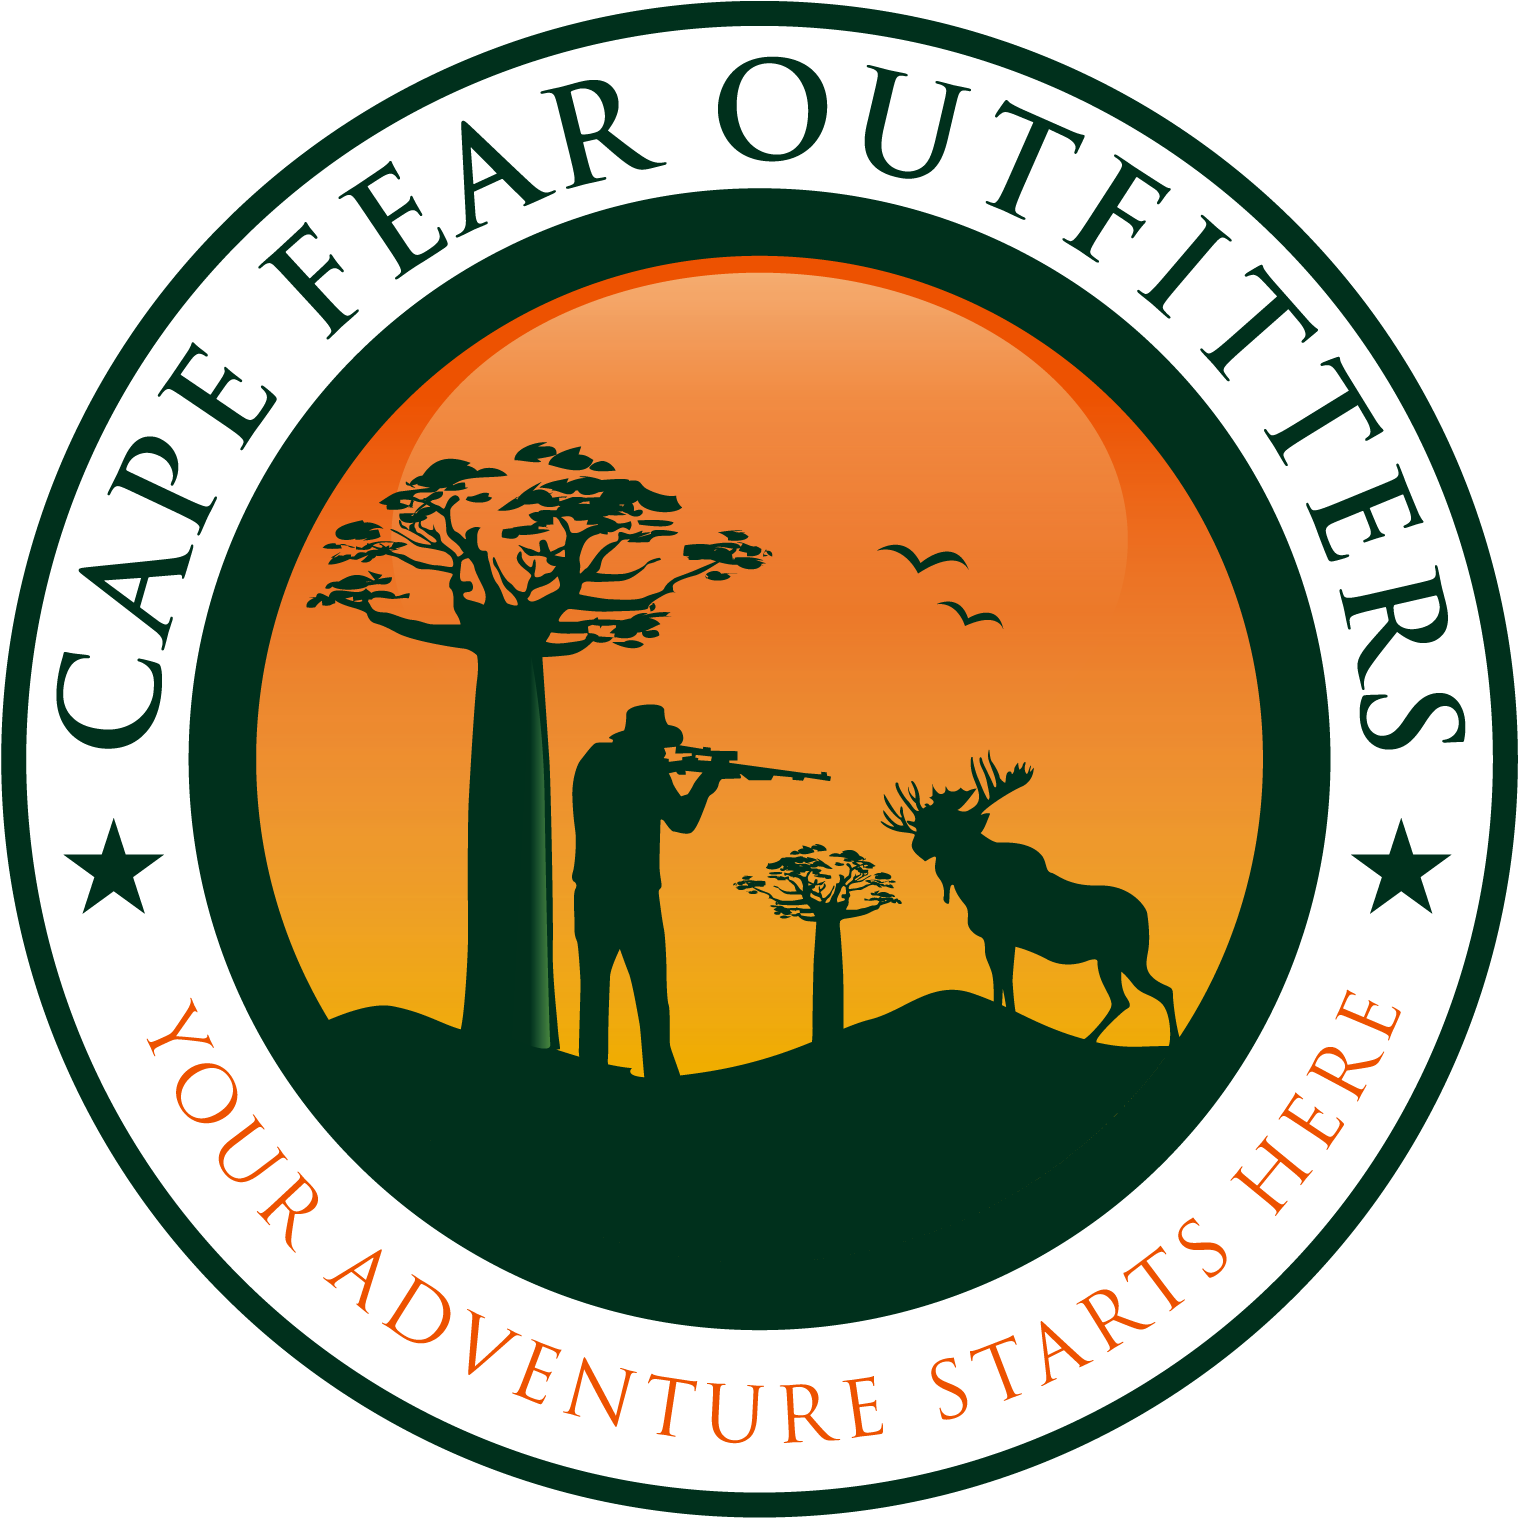 Cape Fear Outfitters Logo Gun Parts, Hunting Supplies, - Manhattan High School Boys Soccer (1616x1636)